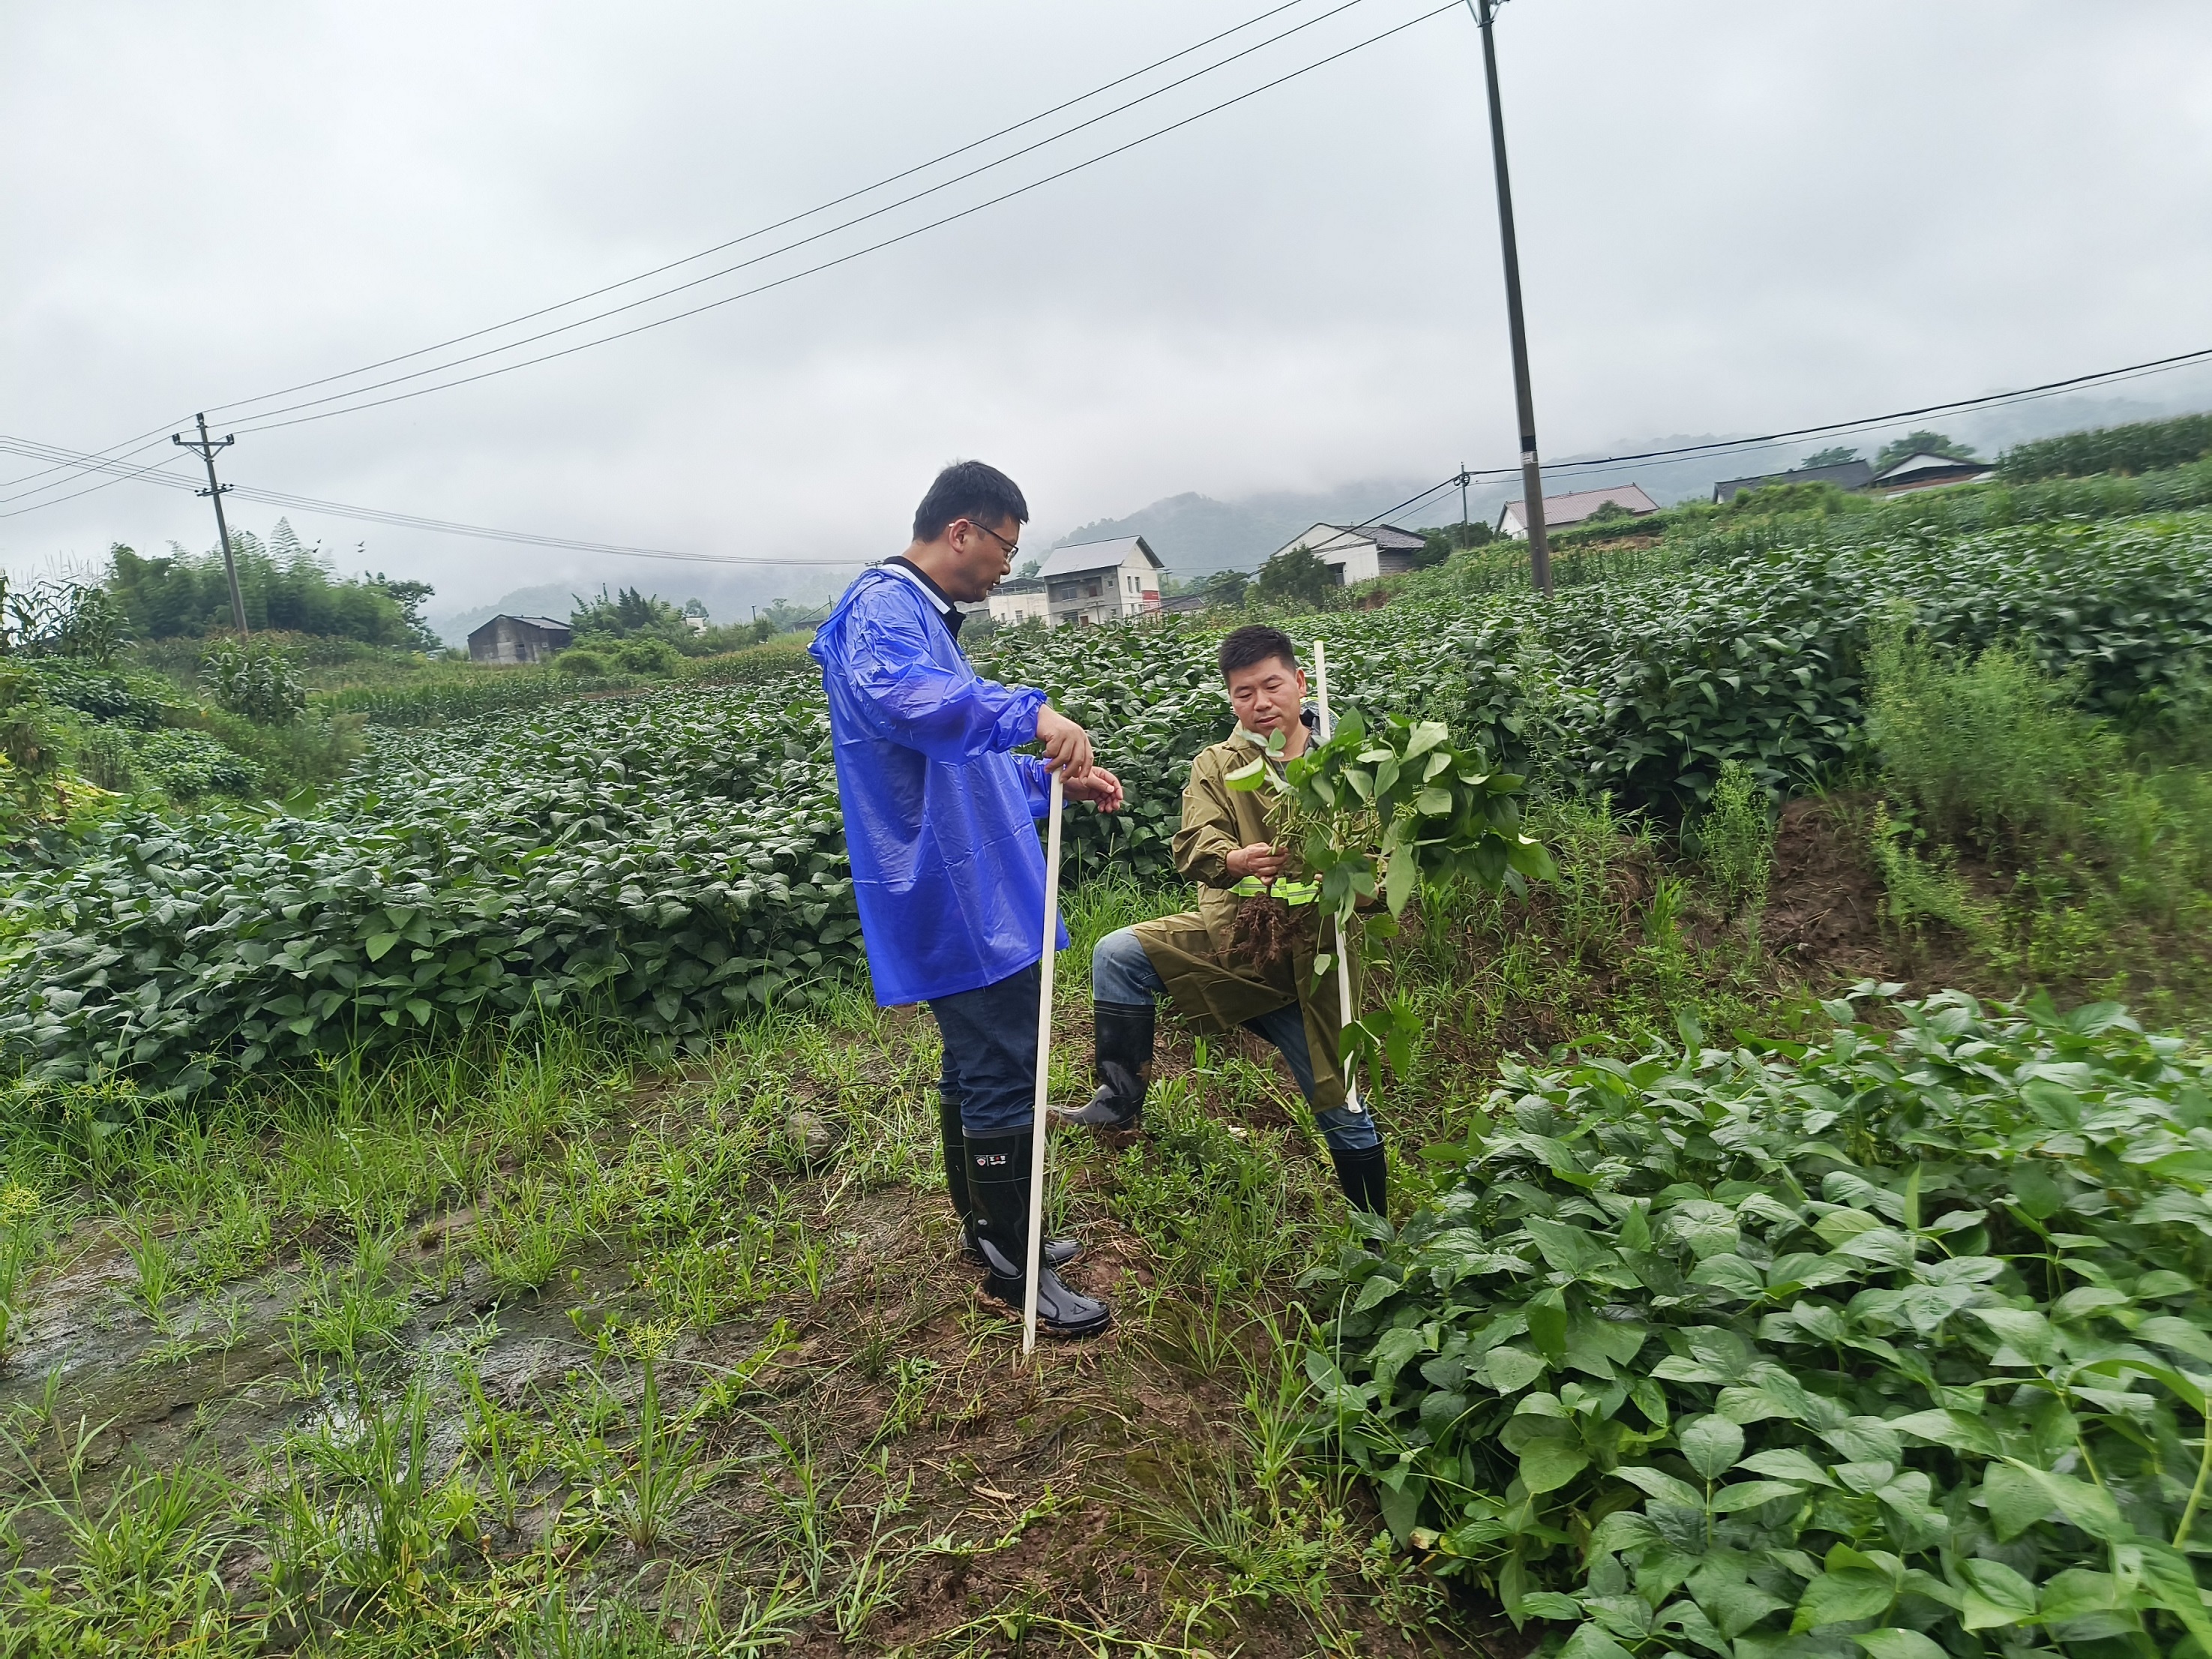 重庆市种子站到水稻所大发彩票种业垫江基地调研大豆品种研发进展